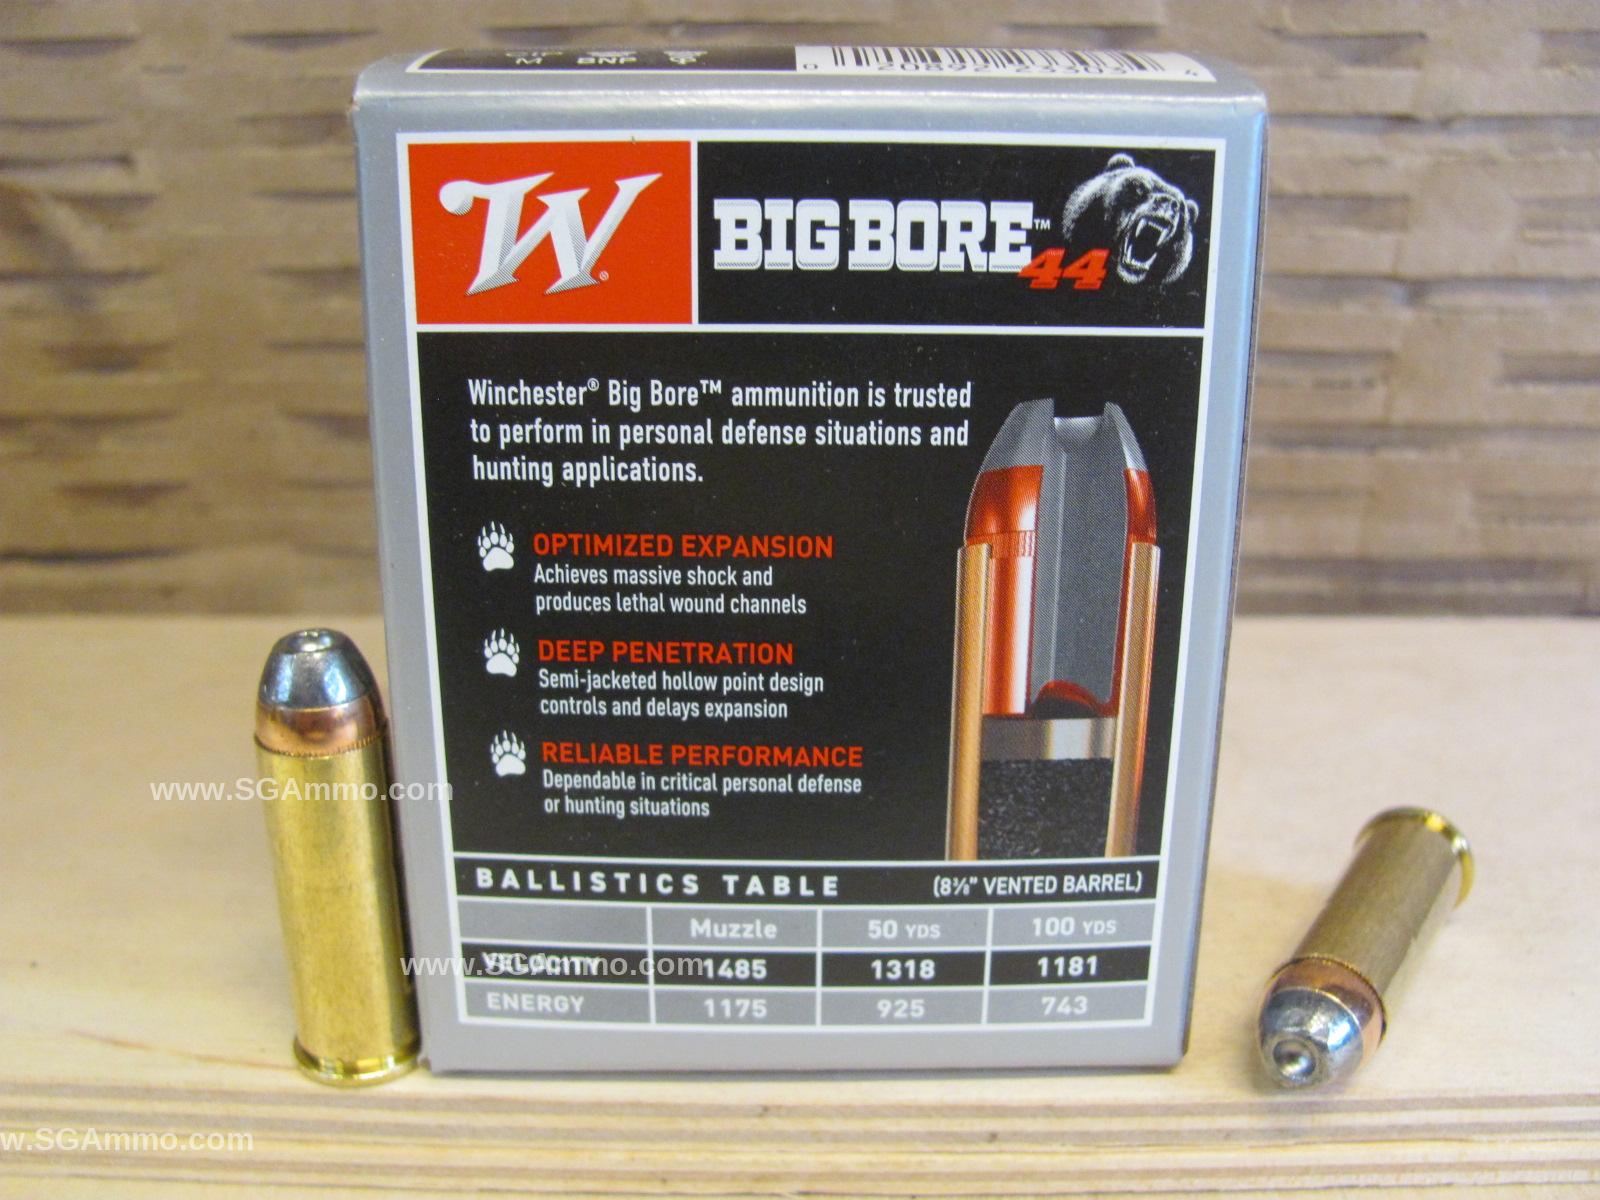 20 Round Box - 44 Remington Magnum 240 Grain SJHP Winchester Big Bore Ammo - X44MBB 